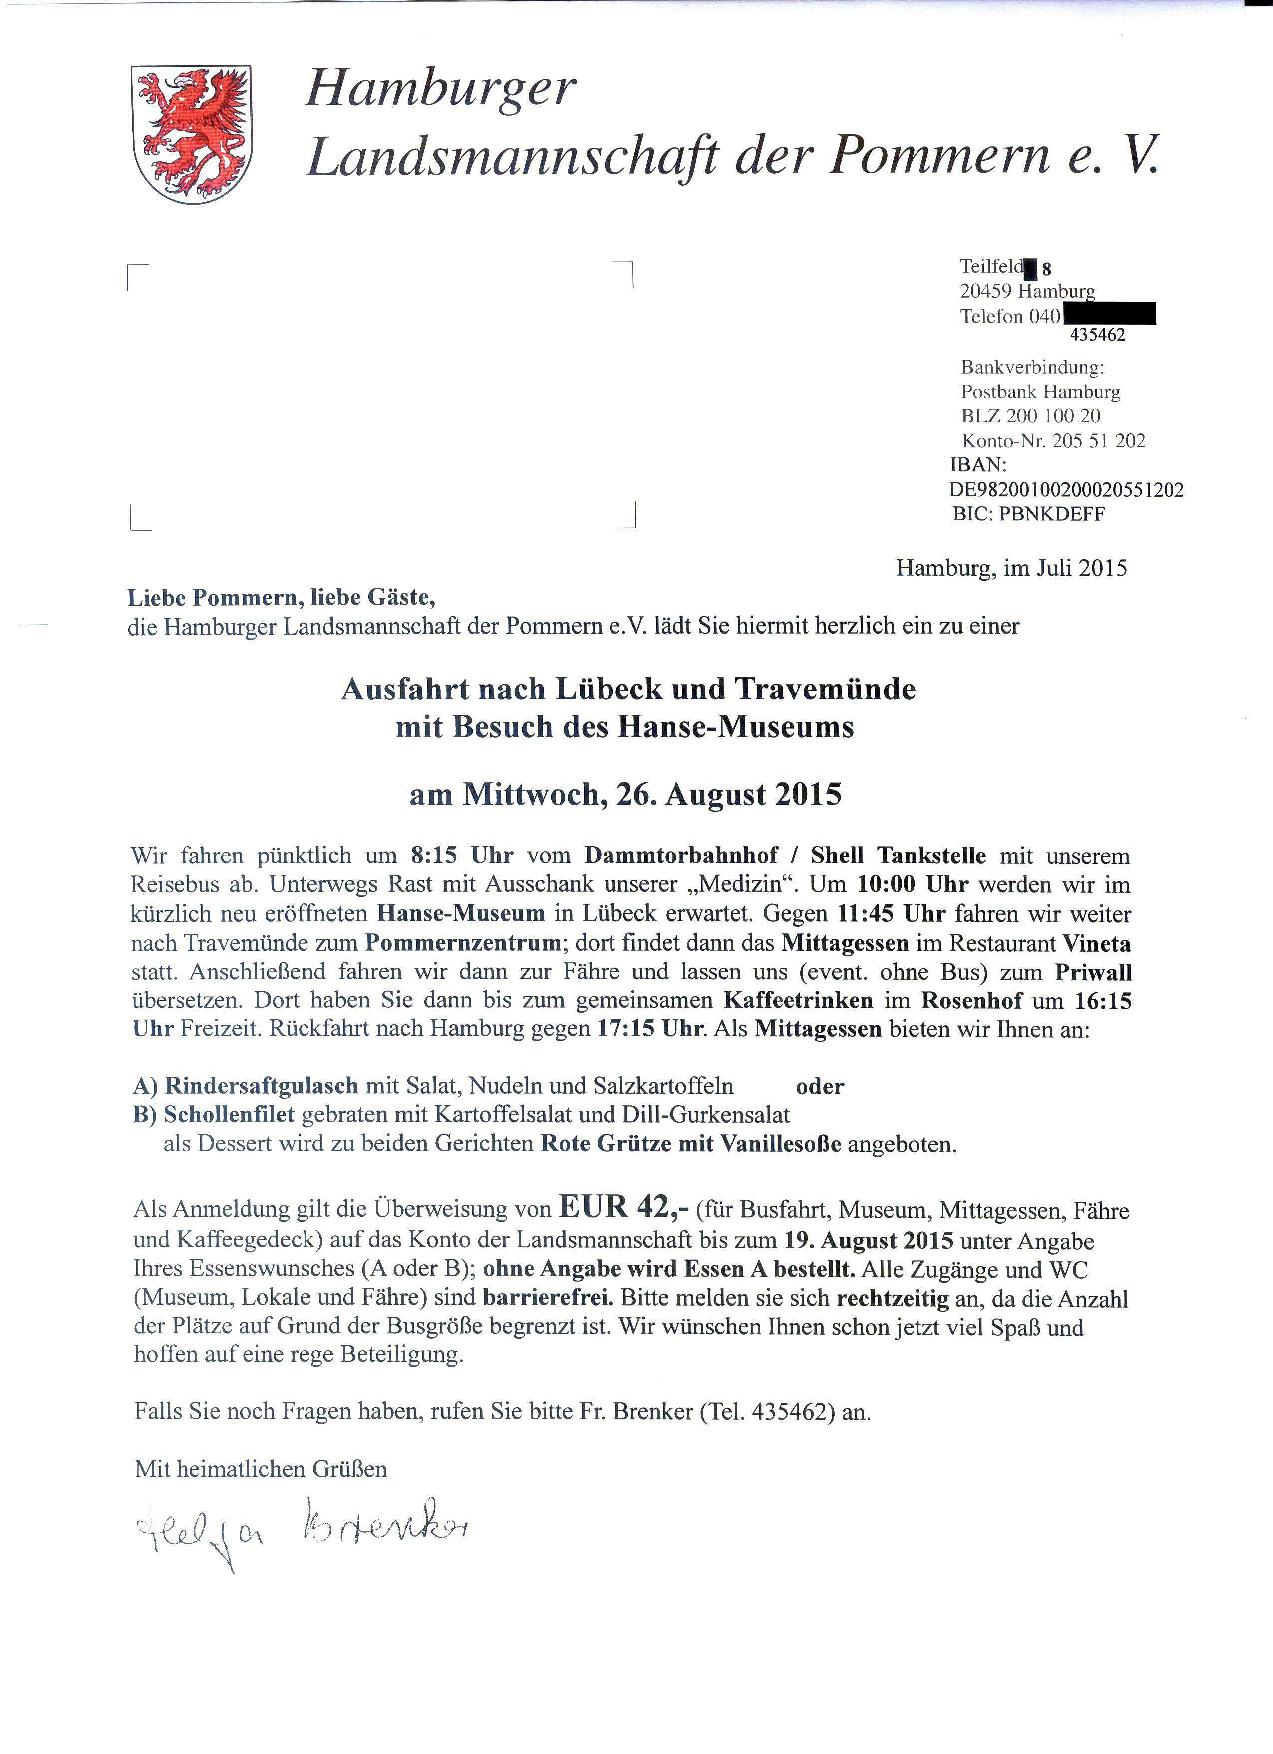 Einladung zur Ausfahrt der PLM am 26.8.2015 zum Hansemuseum in Lübeck